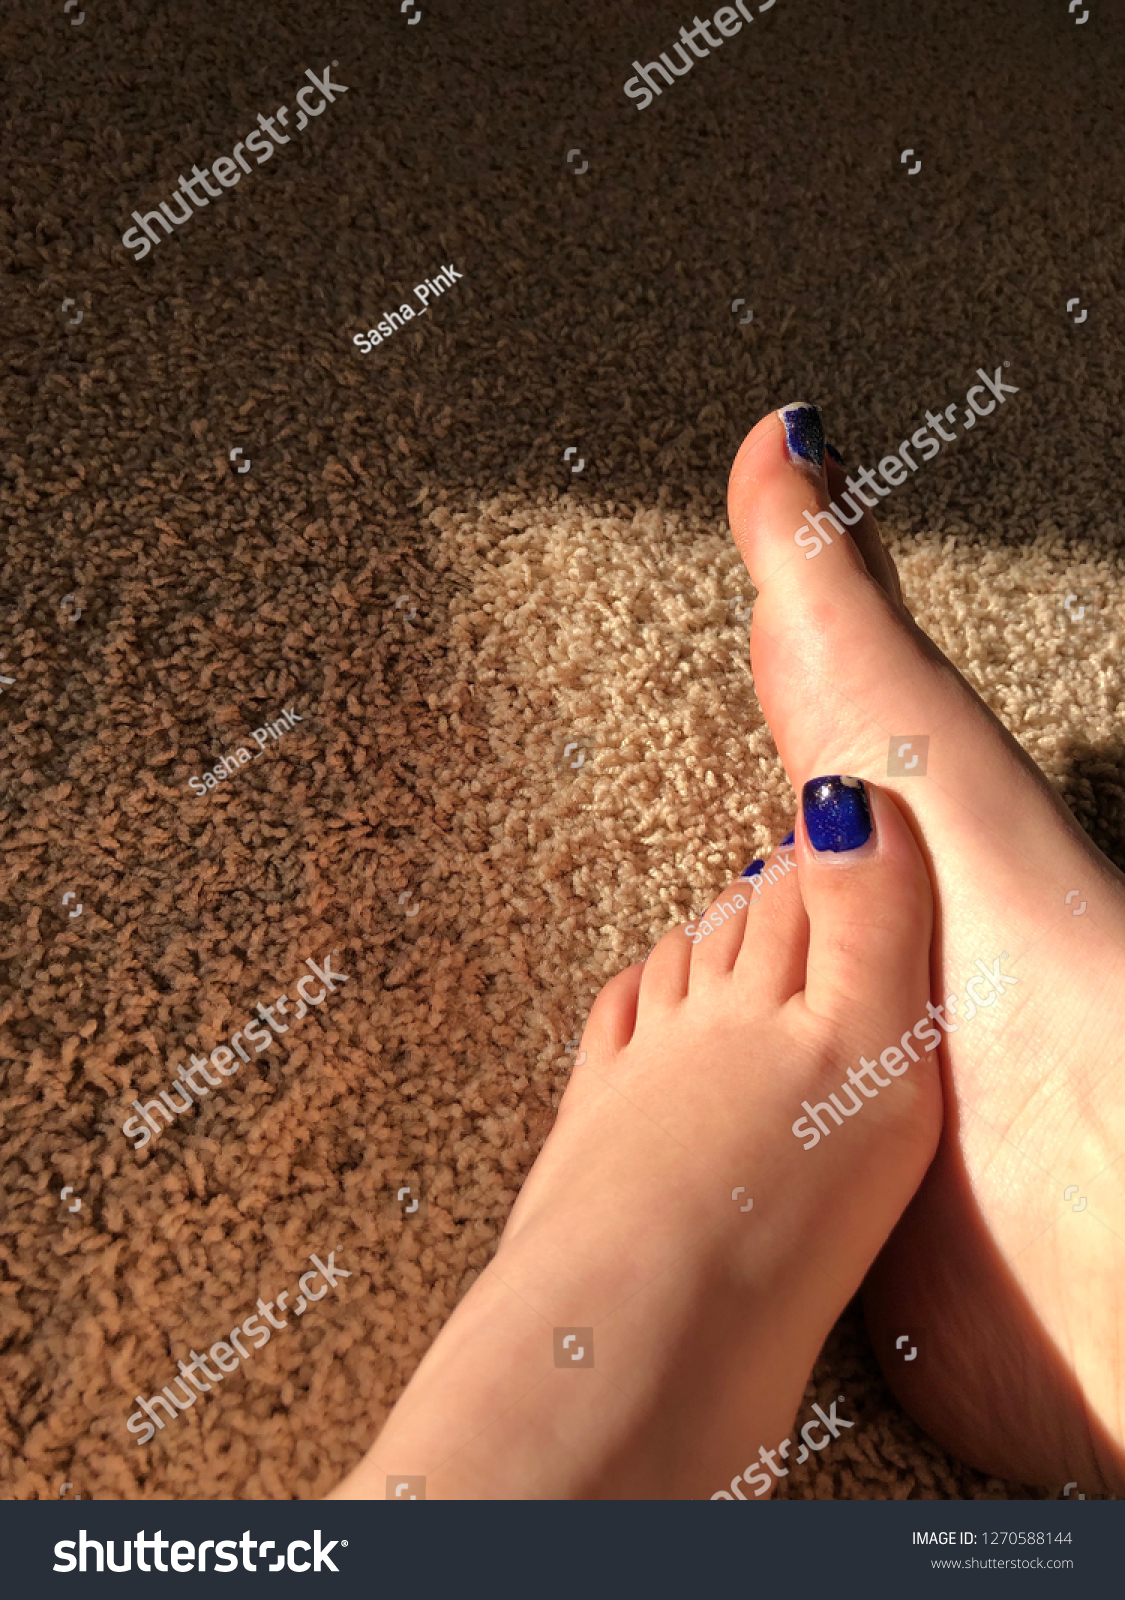 Hot Girls Feet